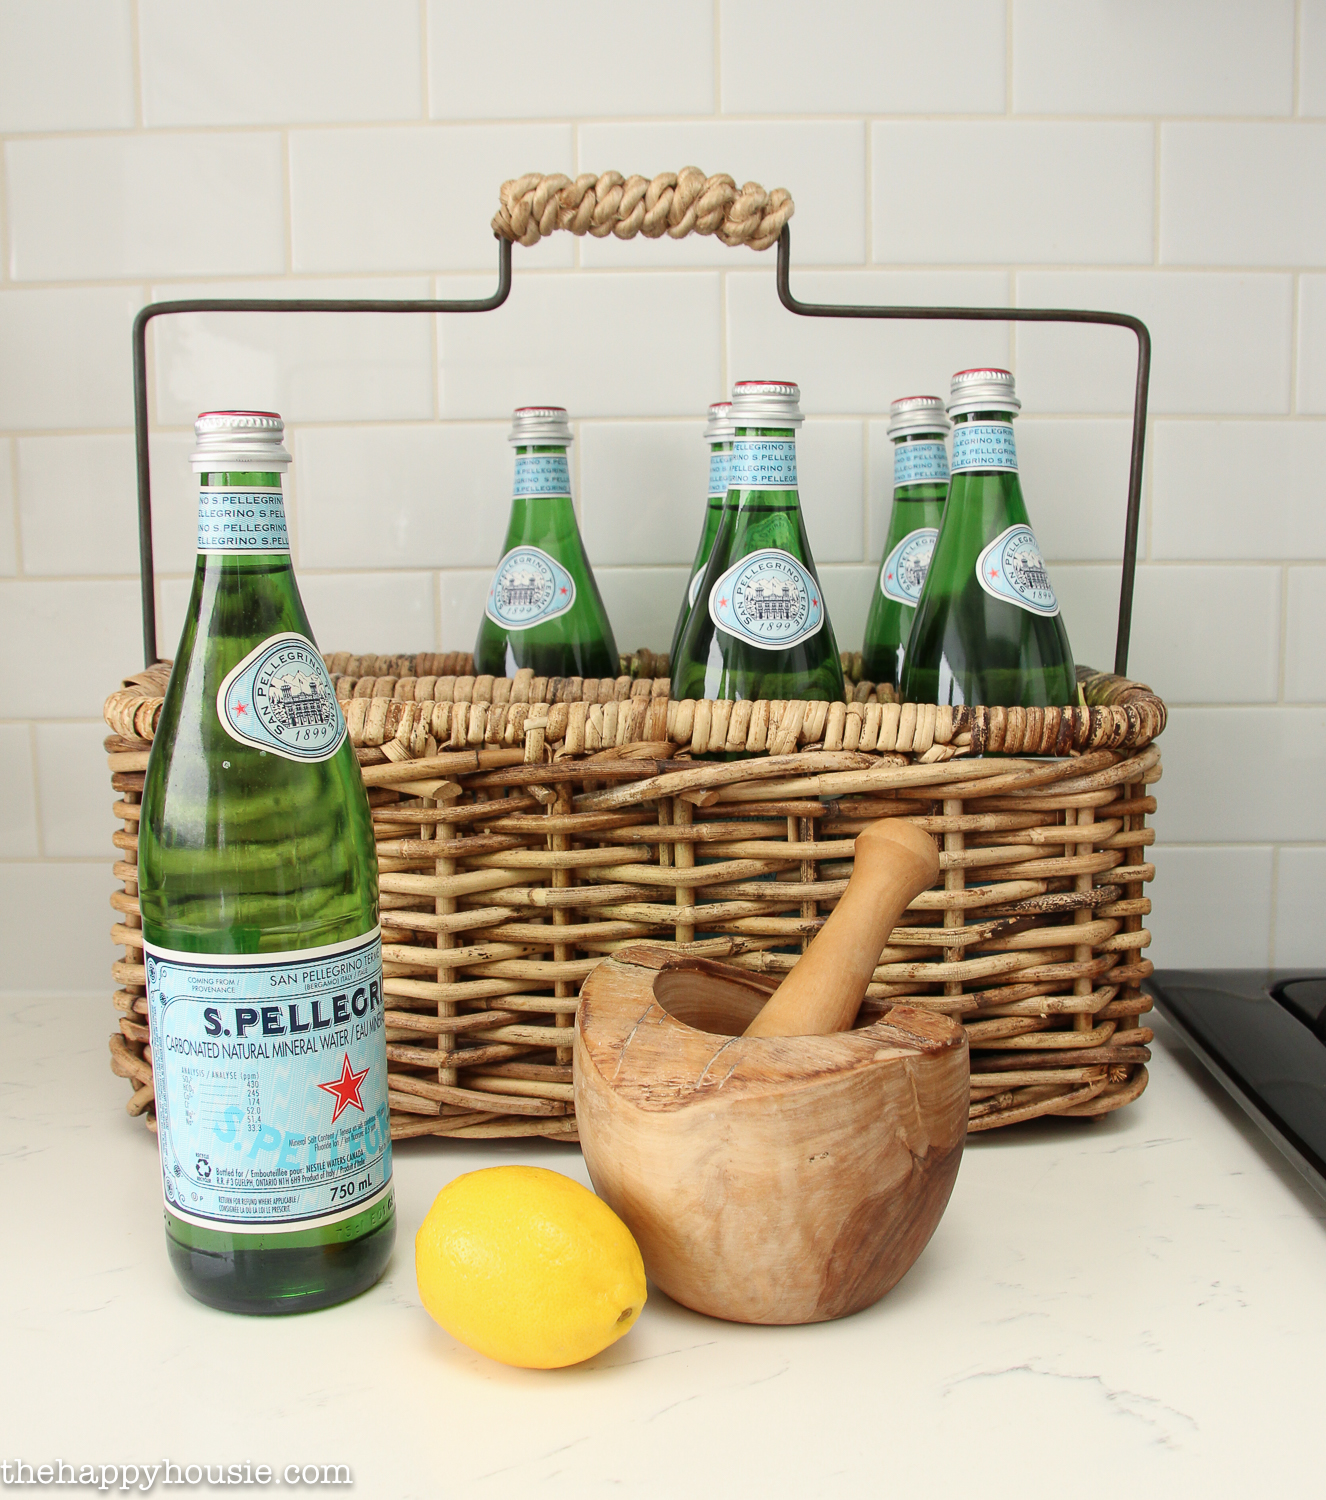 A wicker basket with Pellegrino bottles in it.